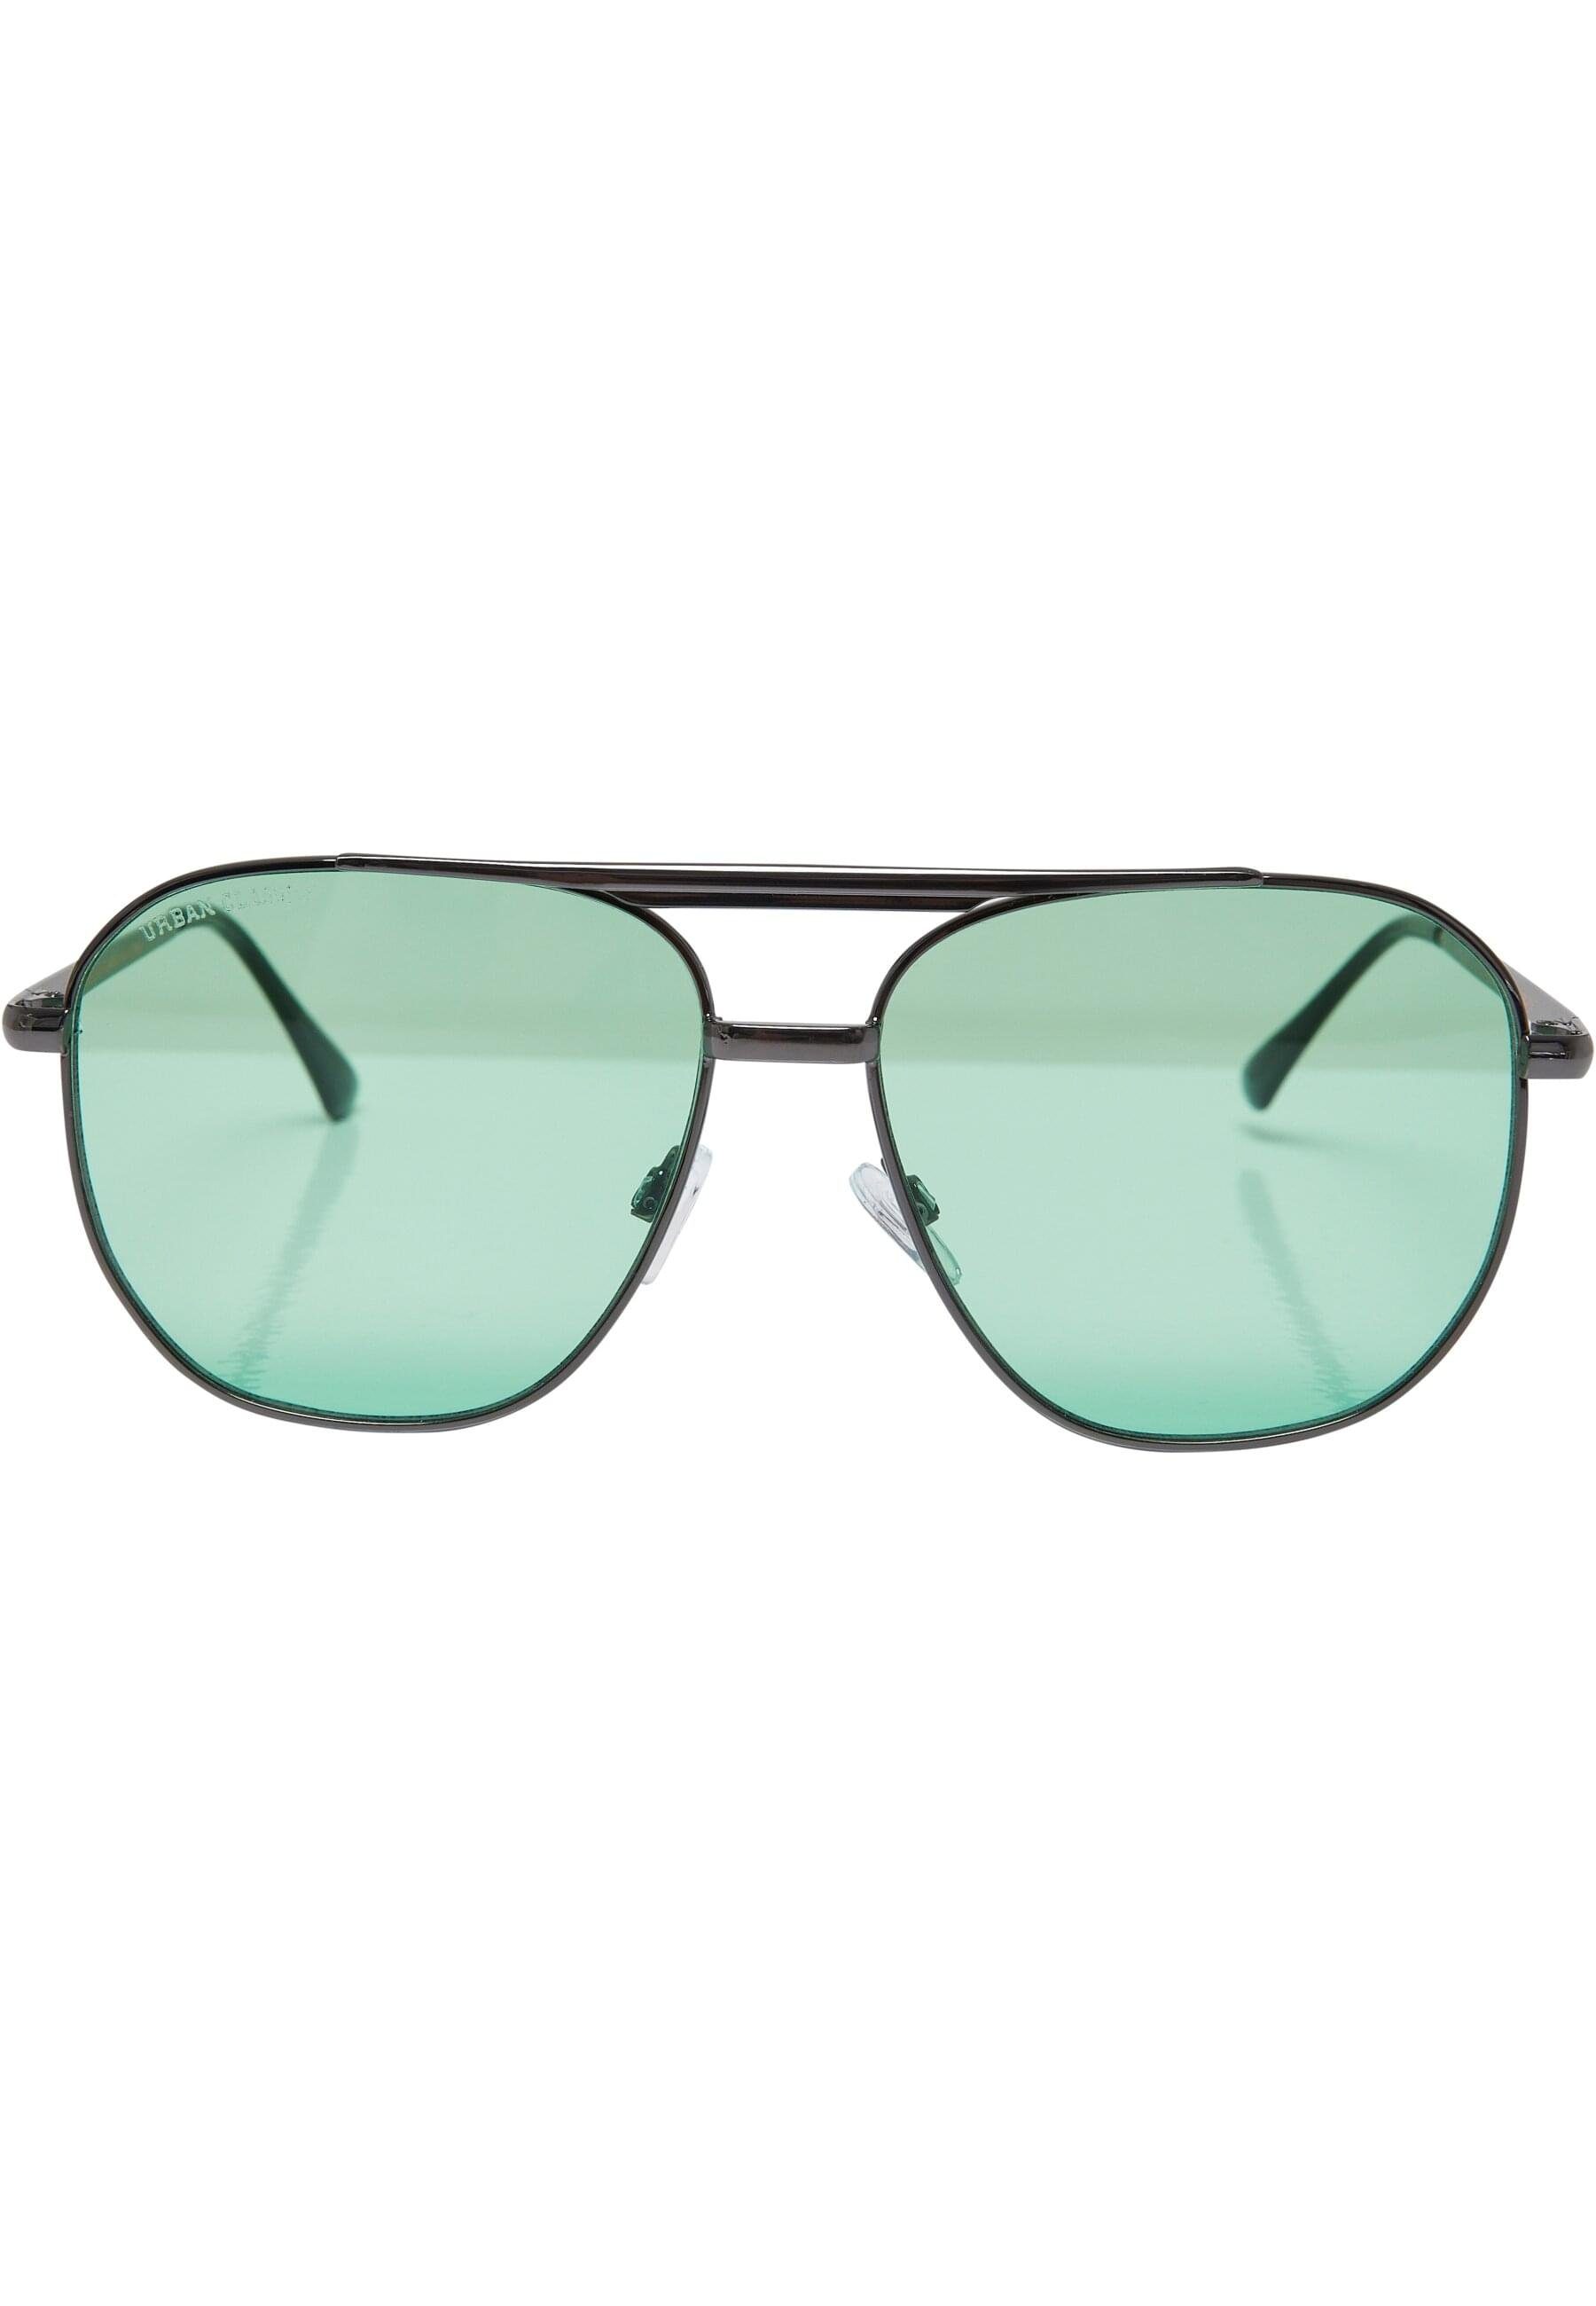 URBAN CLASSICS Sonnenbrille Sunglasses Unisex gunmetal/leaf Manila